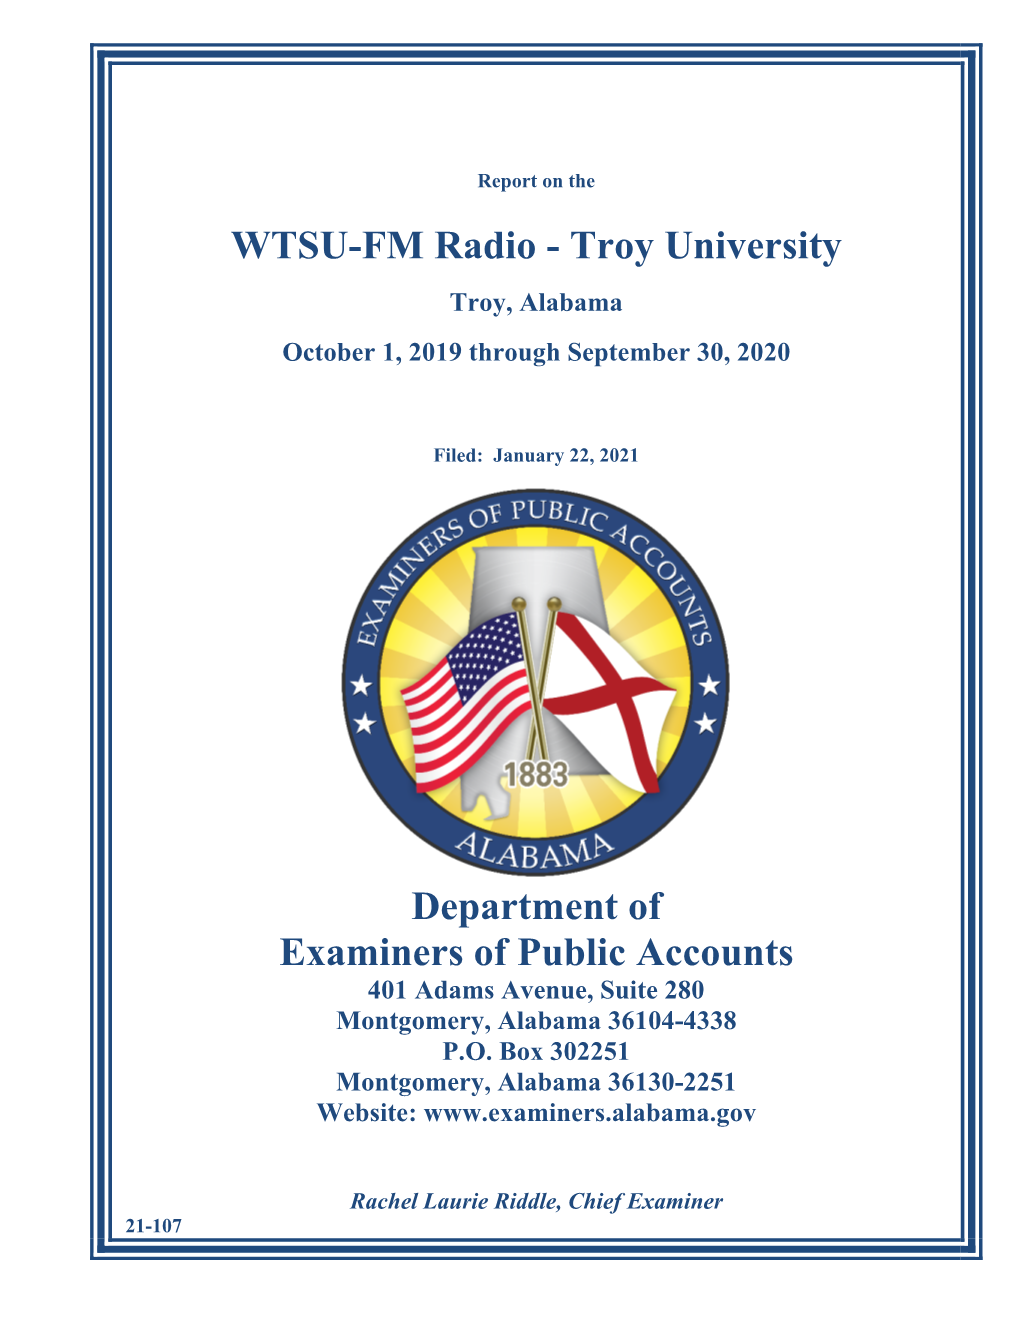 WTSU-FM Radio - Troy University